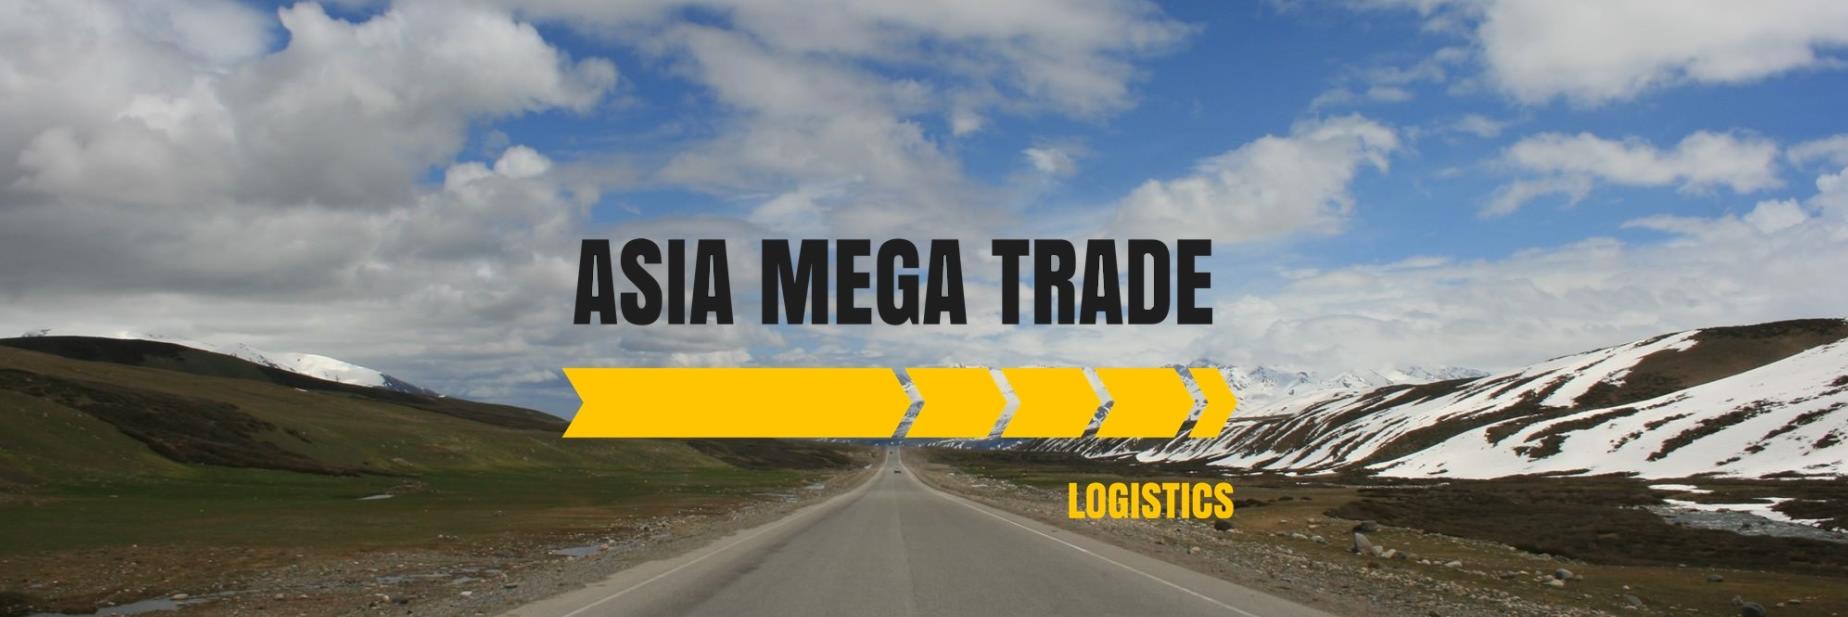 ТОО «ASIA MEGA TRADE» транспортно-логистическая компания